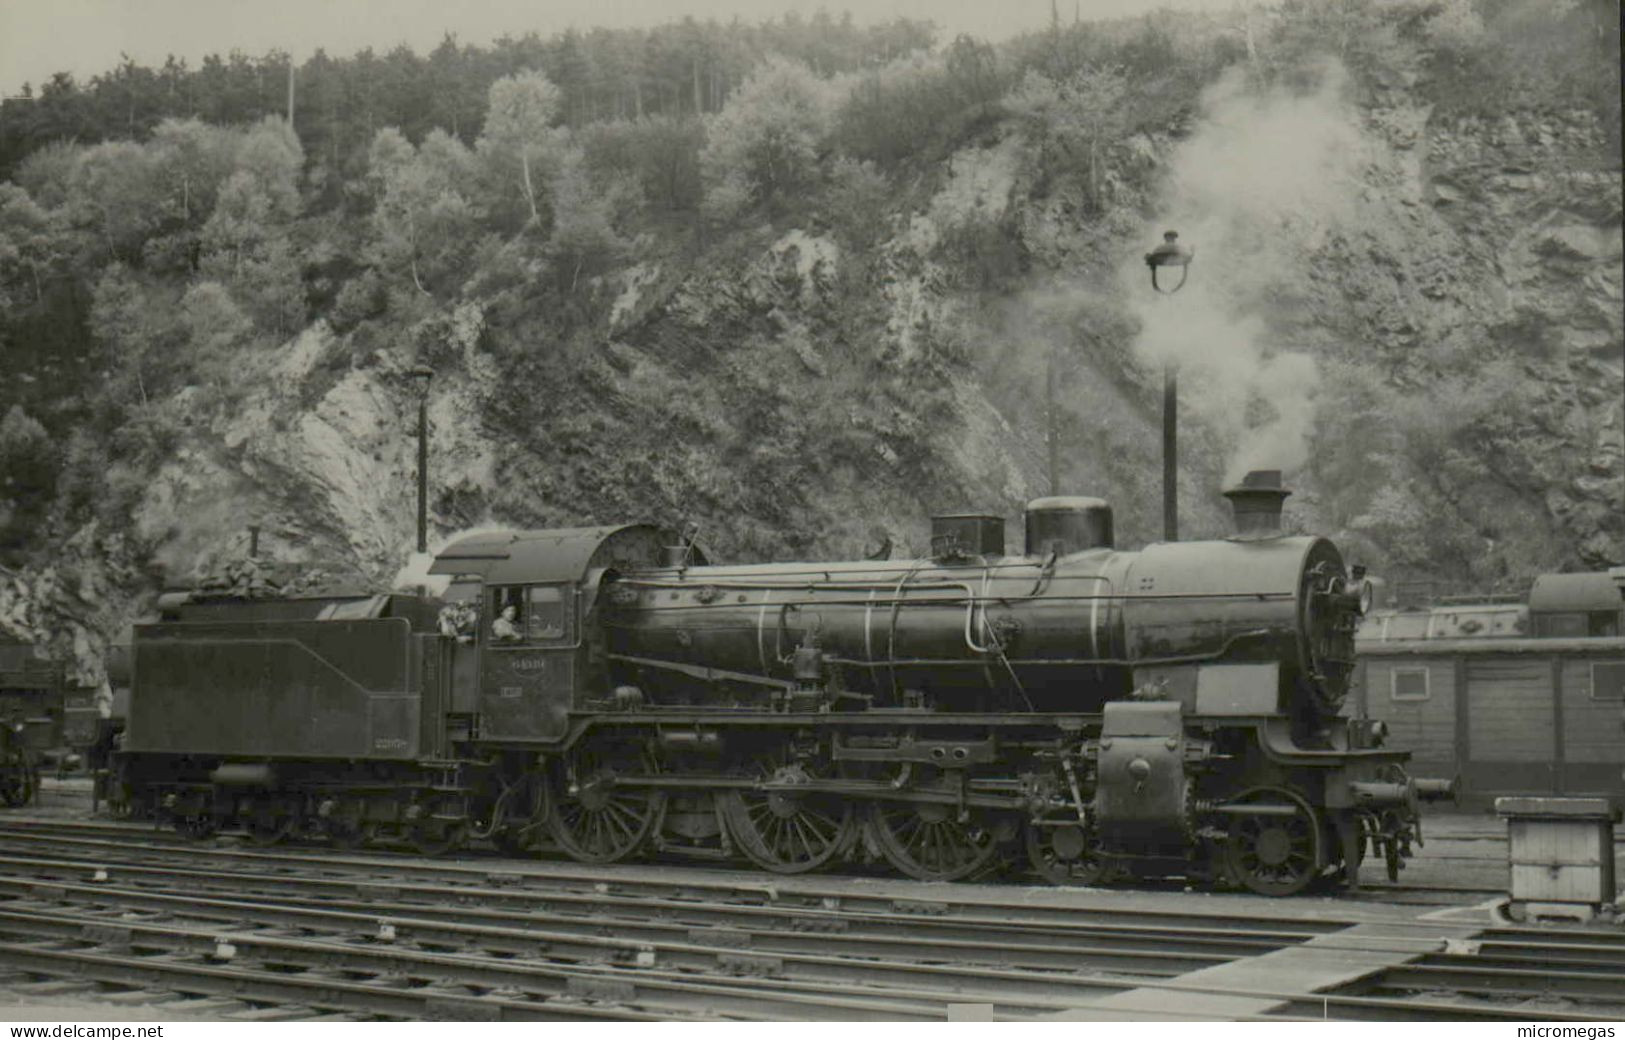 Locomotive 64-049 - Cliché Jacques H. Renaud, Trois-Ponts 1955 - Trains